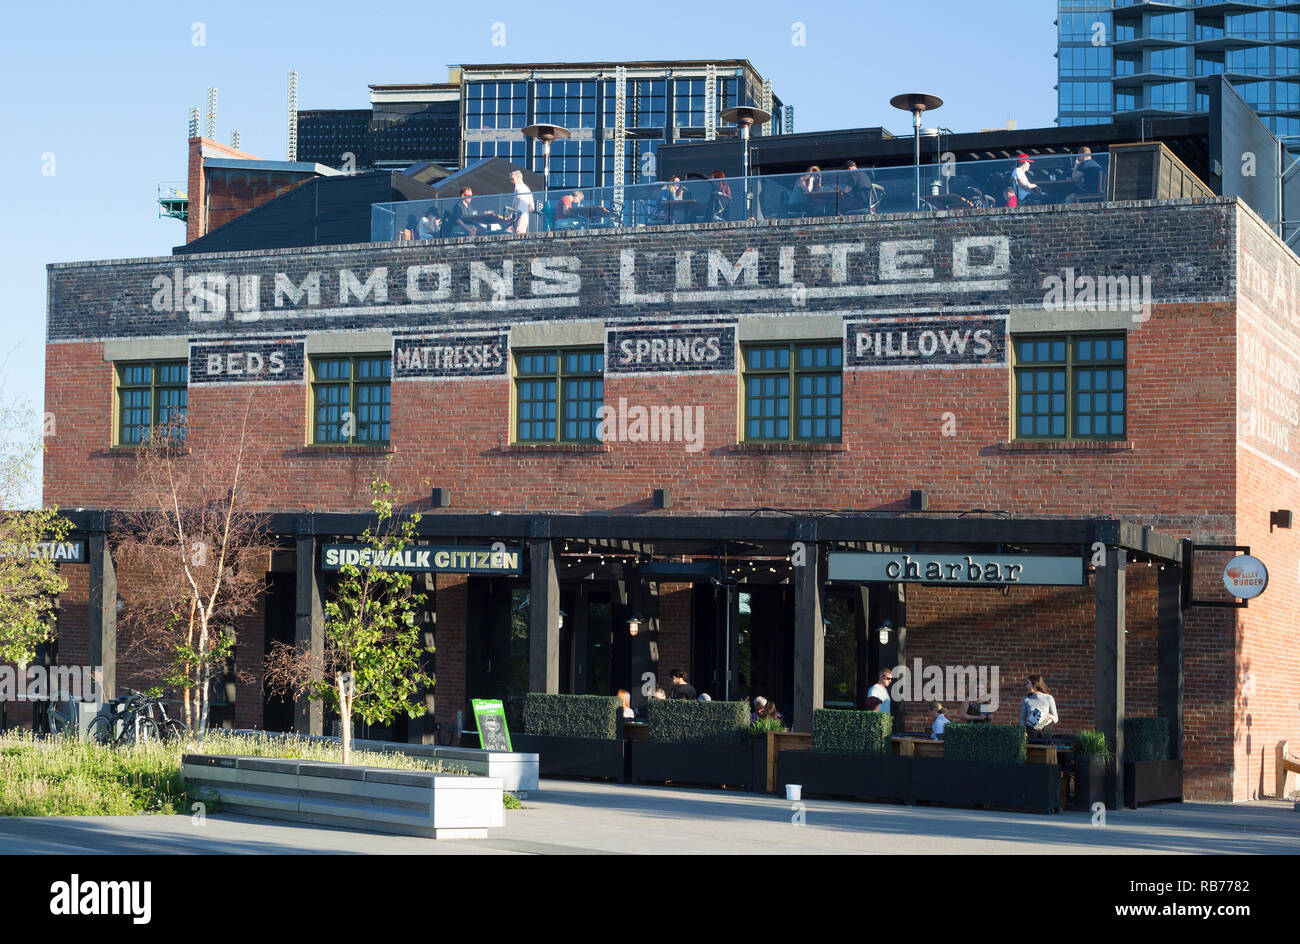 Bâtiment historique en briques de Simmons dans East Village. Construit en 1912, il était à l'origine un entrepôt d'usine et est maintenant un café, un restaurant et une boulangerie. Banque D'Images